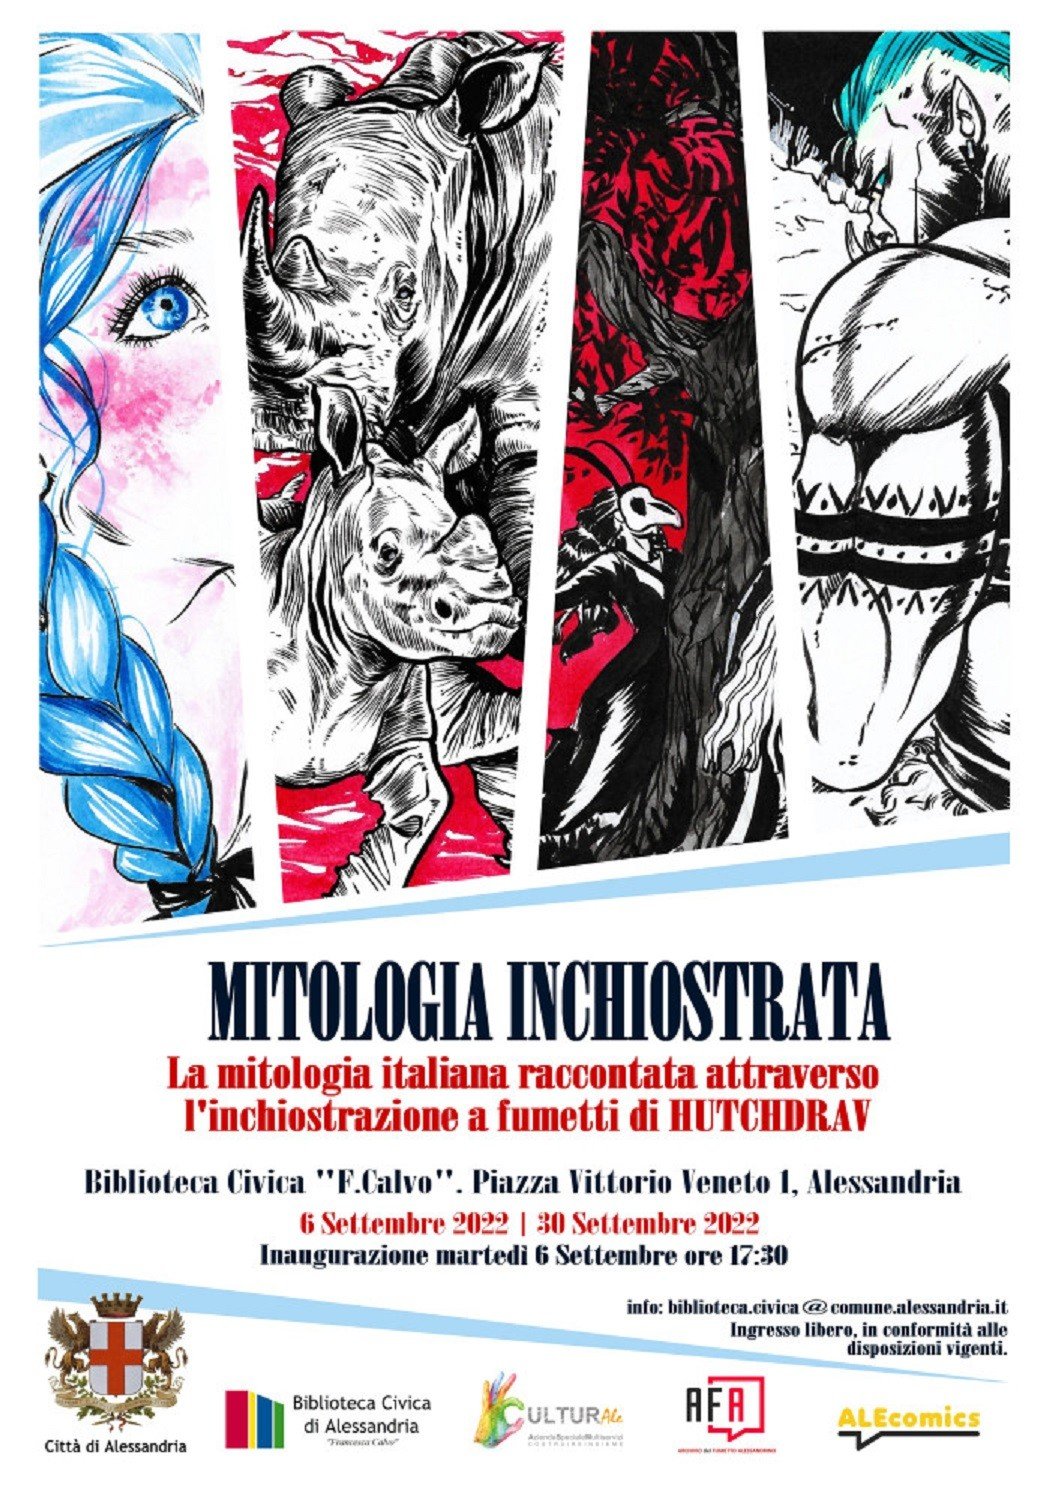 Dal 2 al 30 settembre ad Alessandria la mostra “Mitologia Inchiostrata”